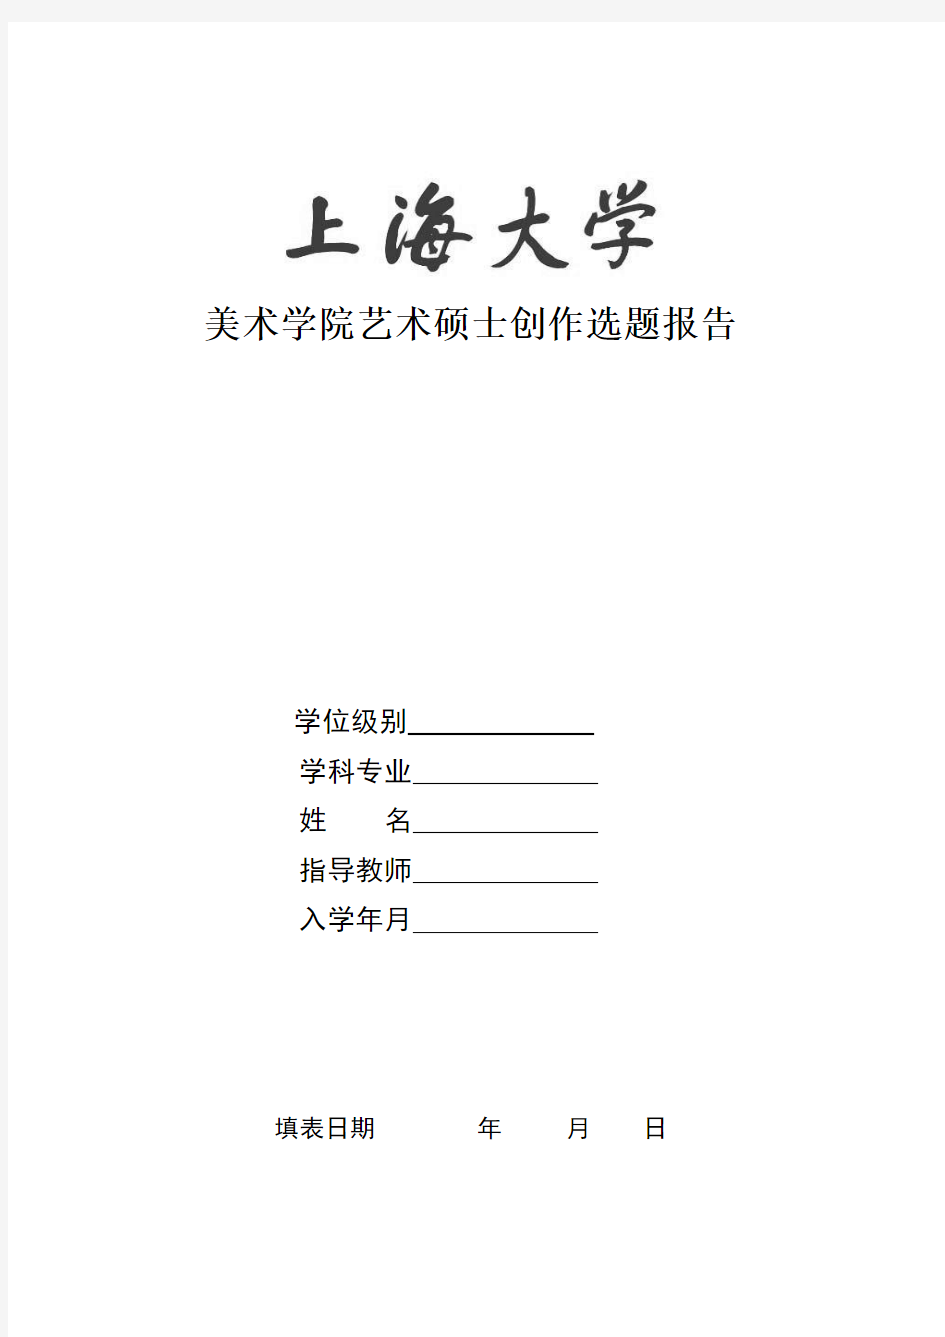 上海大学研究生创作开题报告(格式) (1)